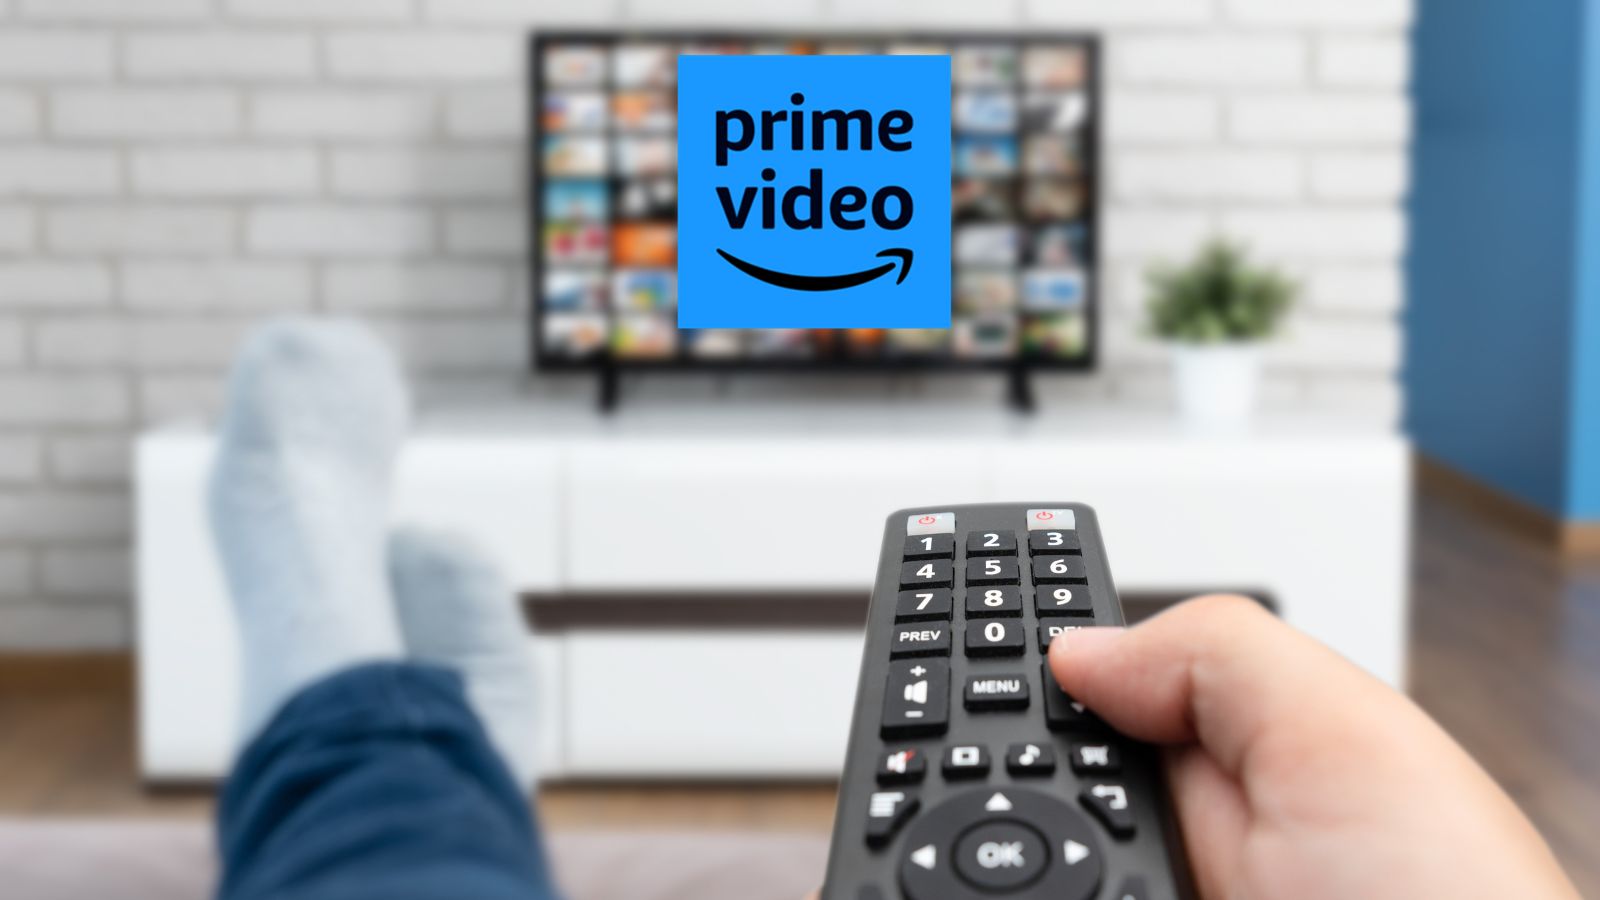 Amazon Prime Video introduce la pubblicità